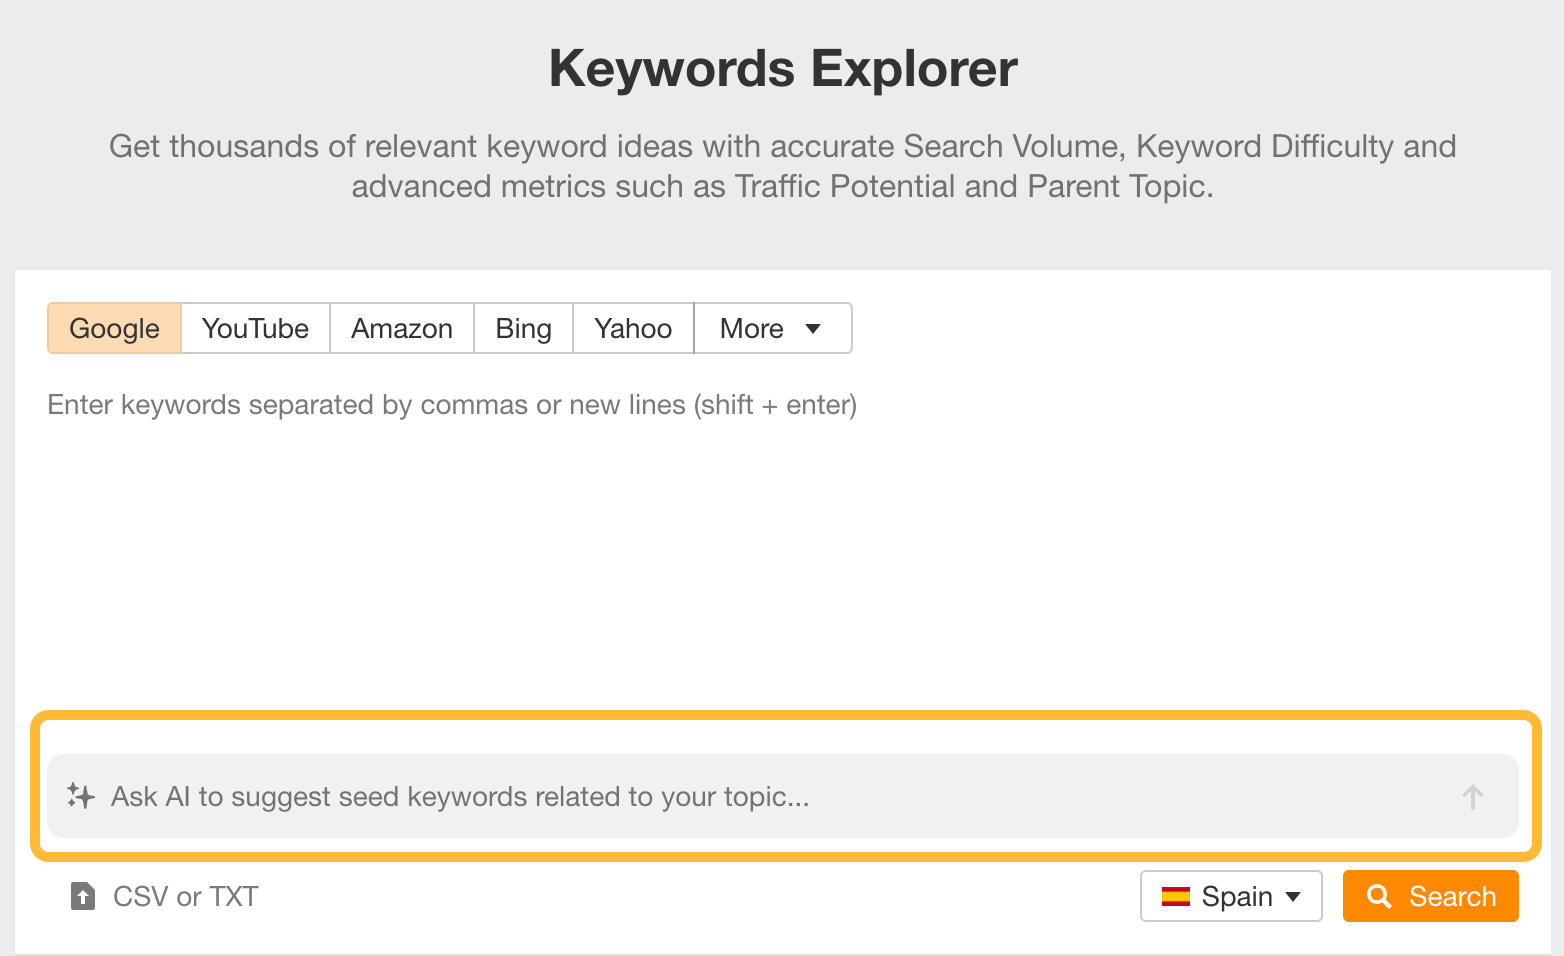 از AI باید کلمات کلیدی اولیه را پیشنهاد کند، یکی از ویژگی های Keywords Explorer